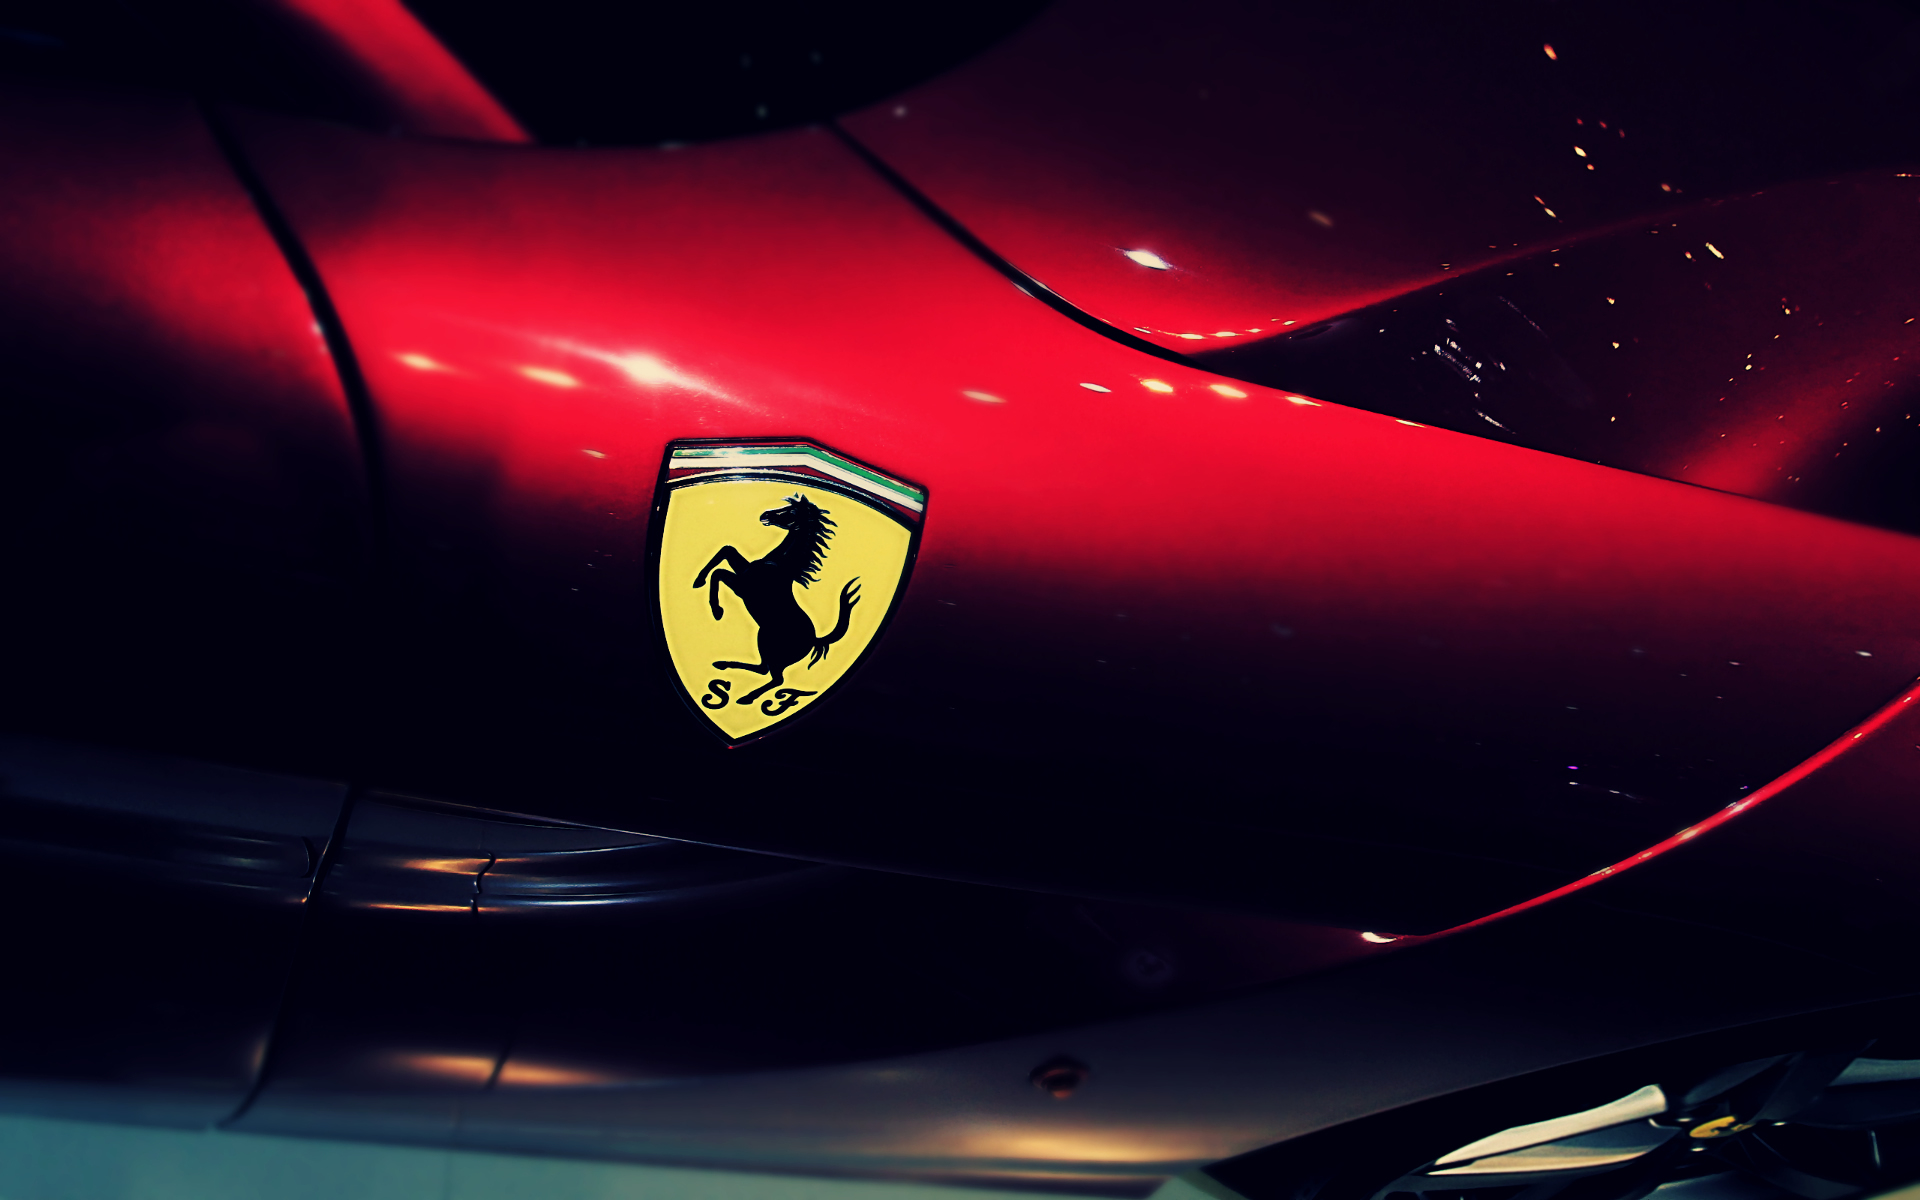 フェラーリのロゴの壁紙,車両,車,自動車ショー,コンセプトカー,スポーツカー